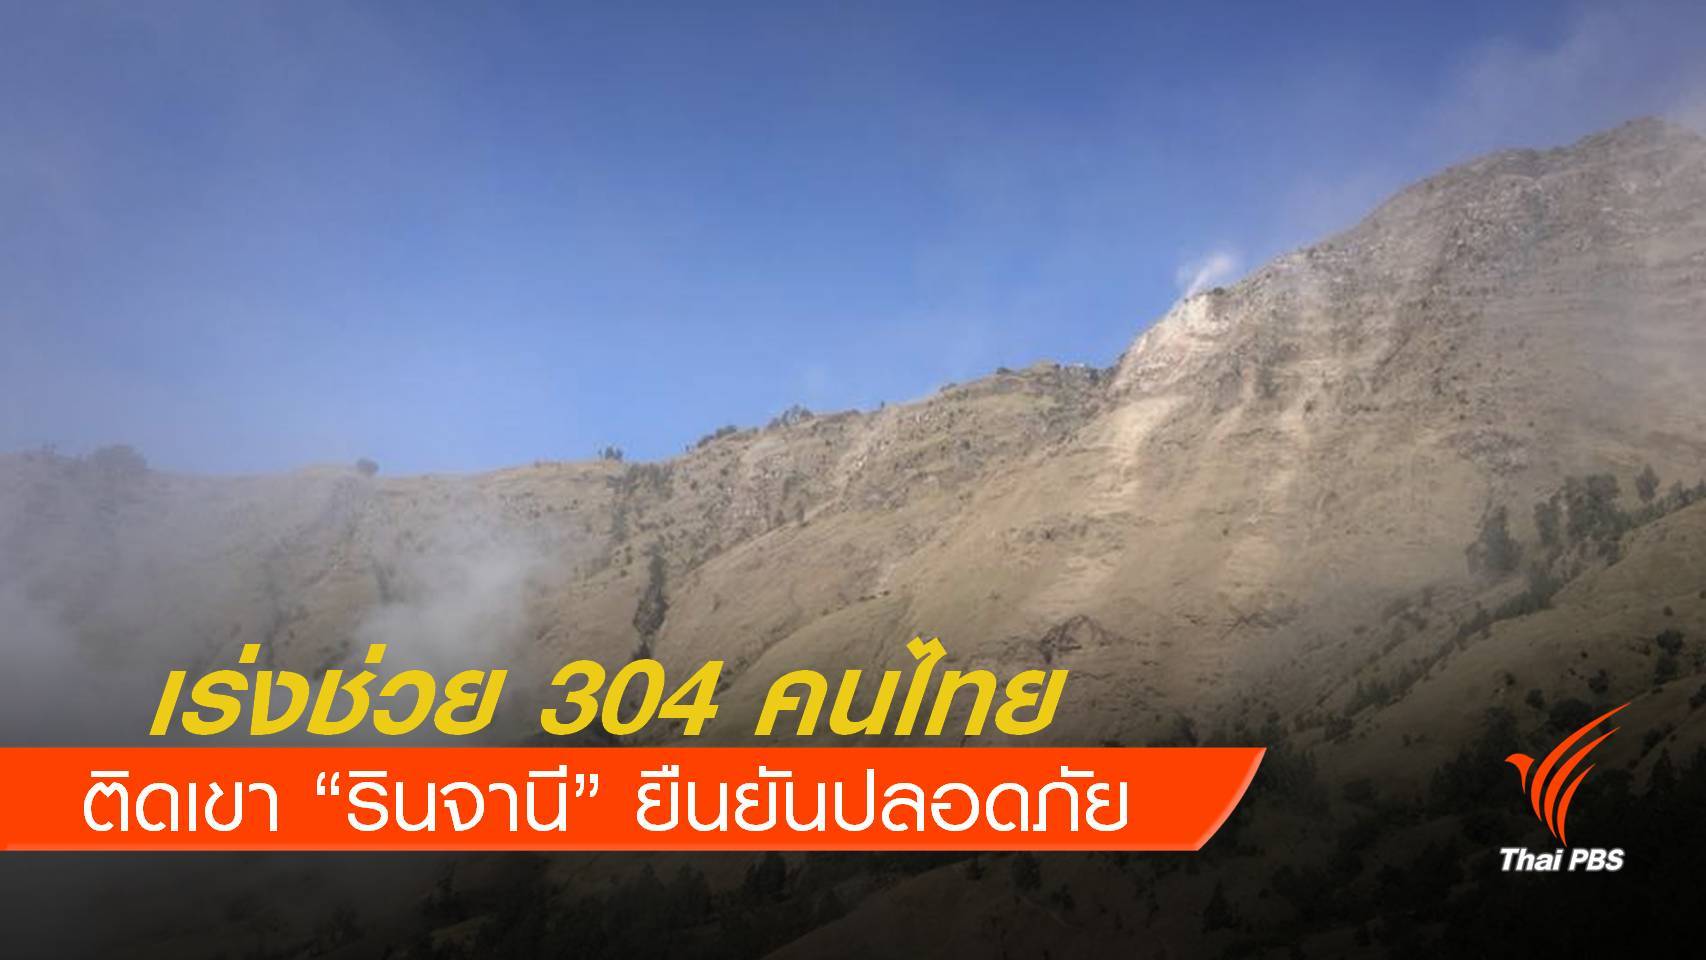 กต.เร่งช่วย 304 คนไทยติดเขารินจานี -ทุกคนปลอดภัย